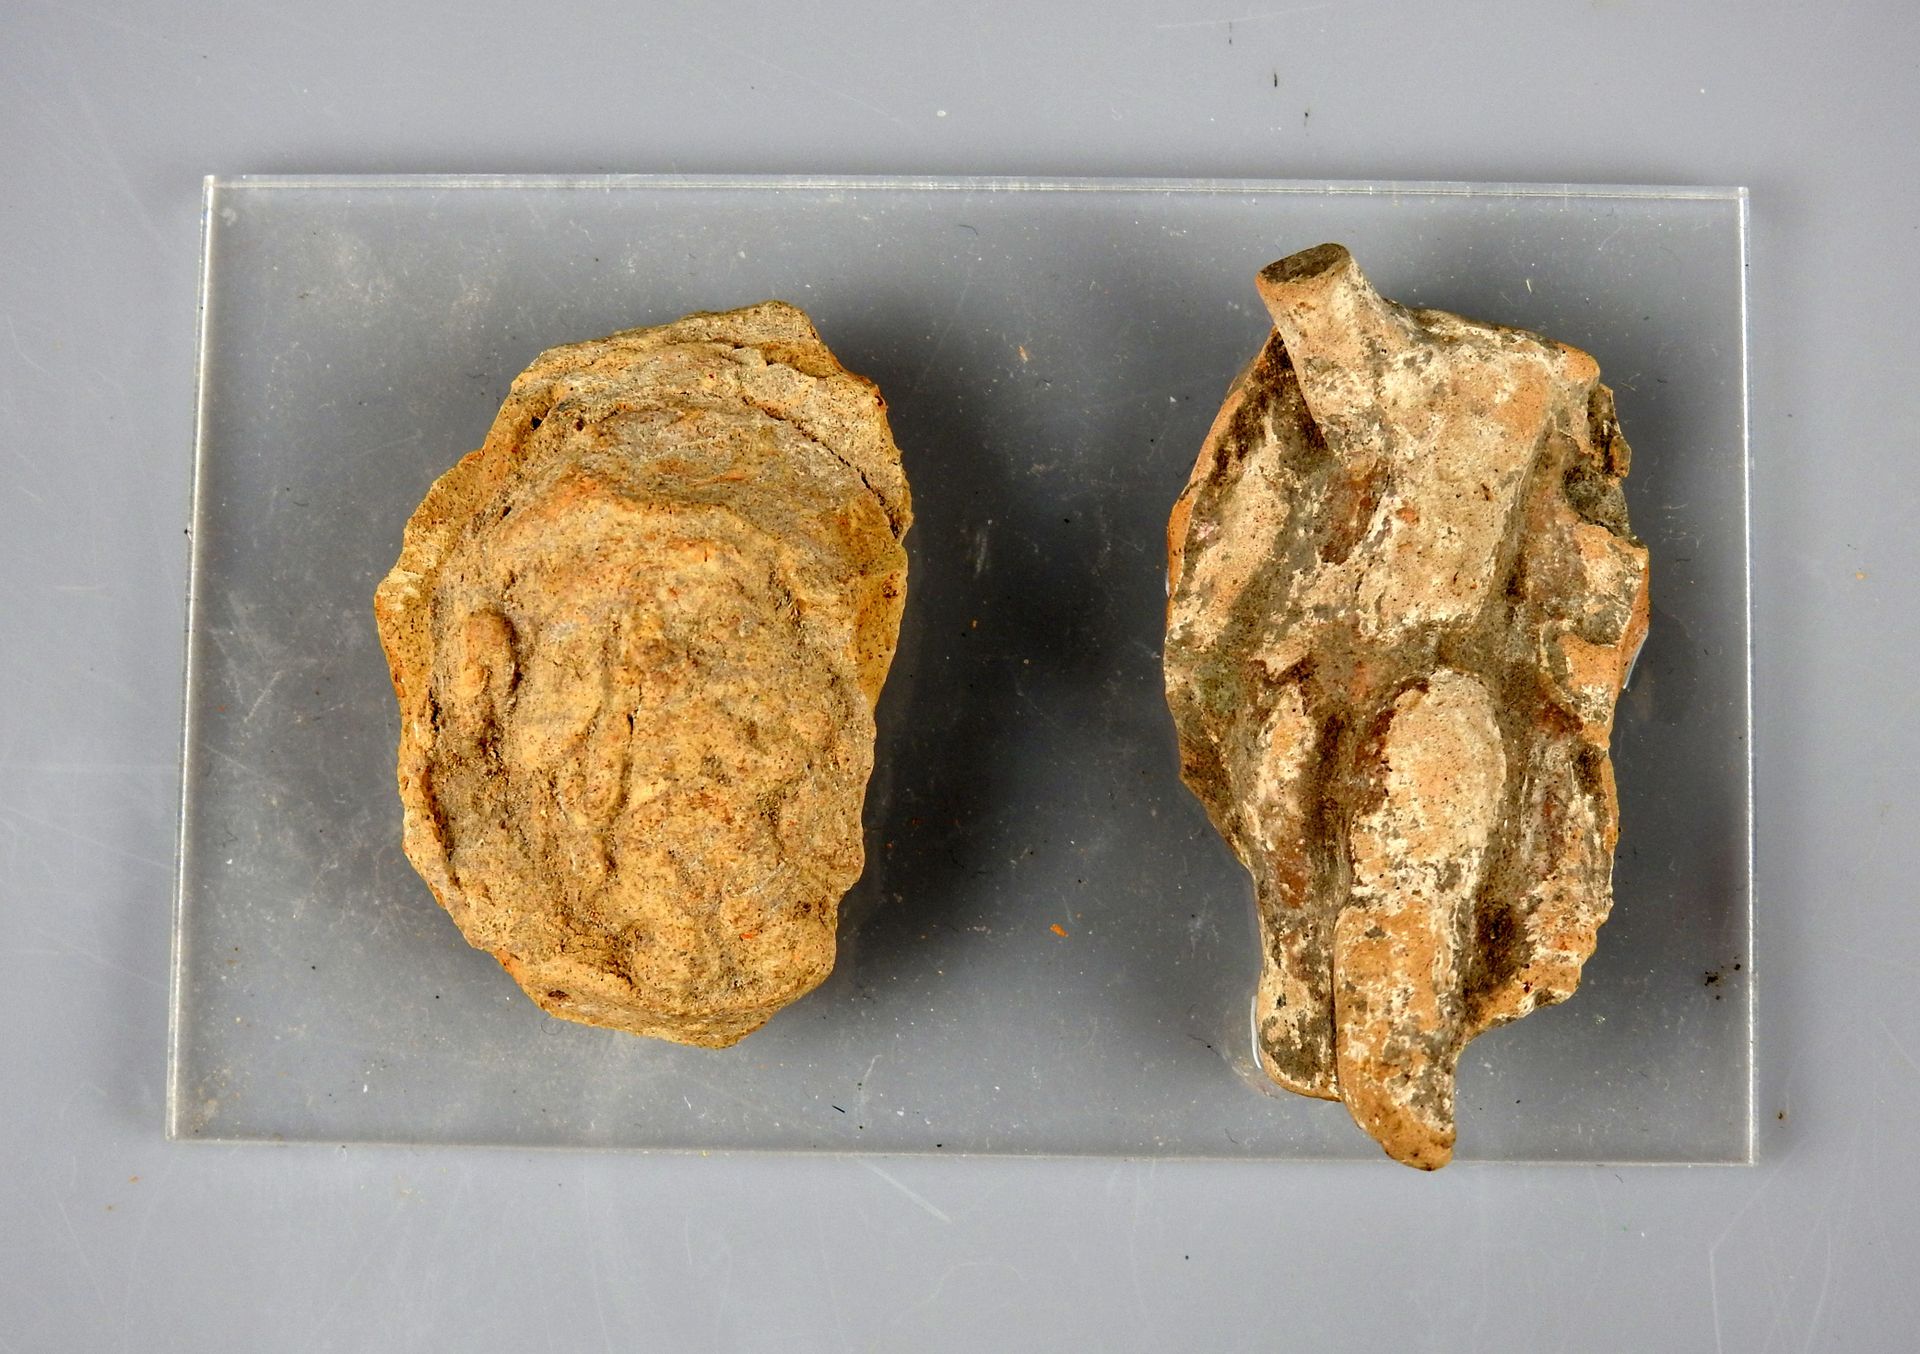 Null 两件拟人雕像的拍品，一个大胡子男人的头和一个外婆的身体

陶器3.7至4.3厘米

罗马时期